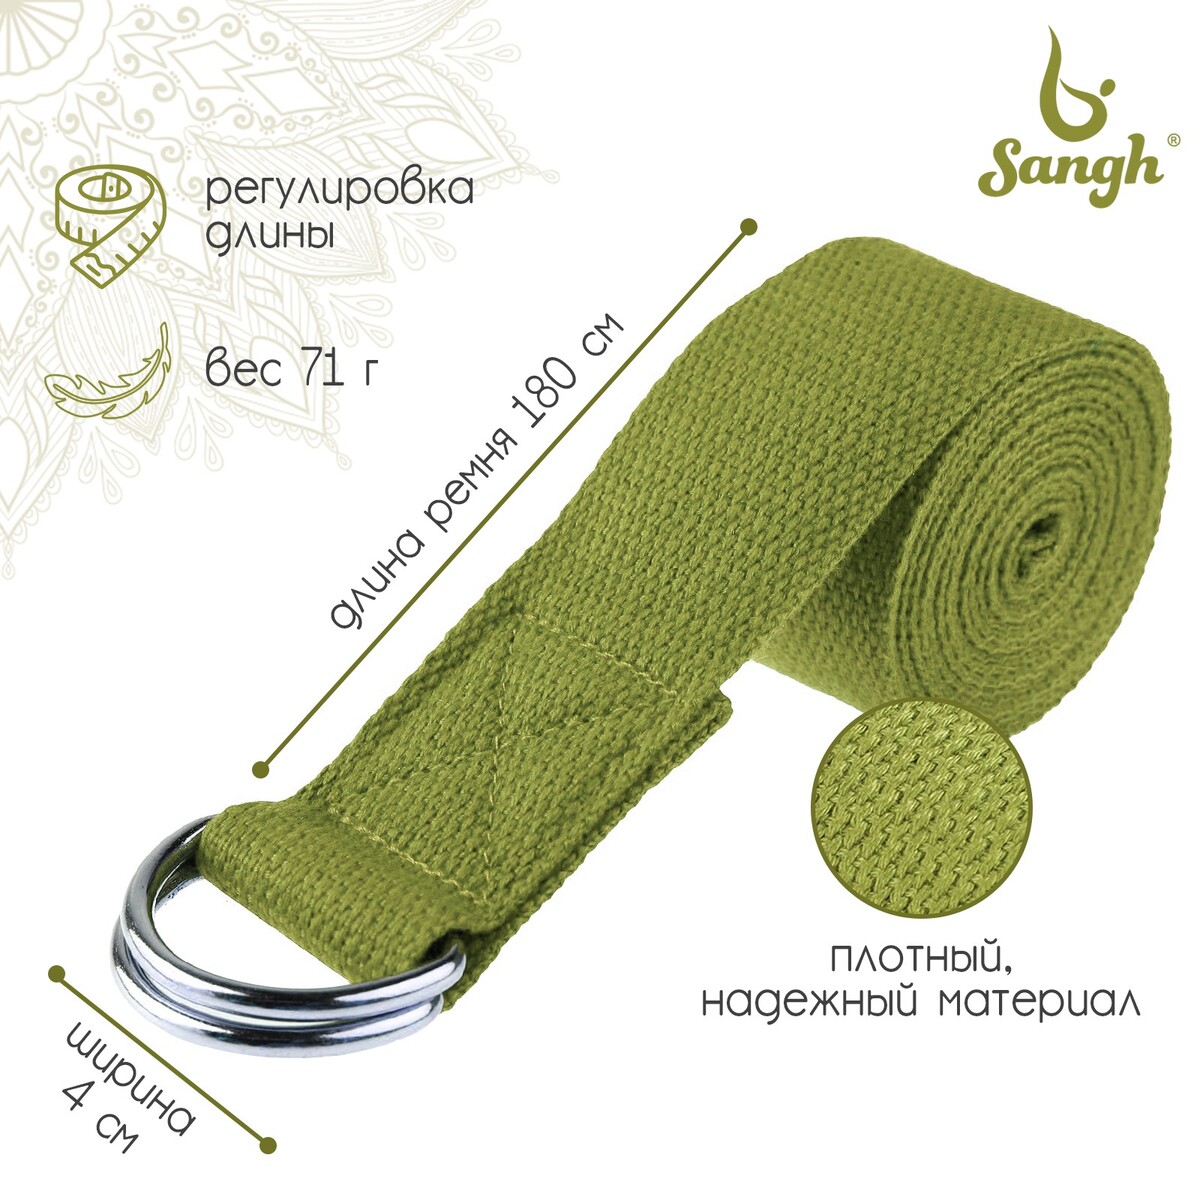 Ремень для йоги sangh, 180×4 см, цвет зеленый